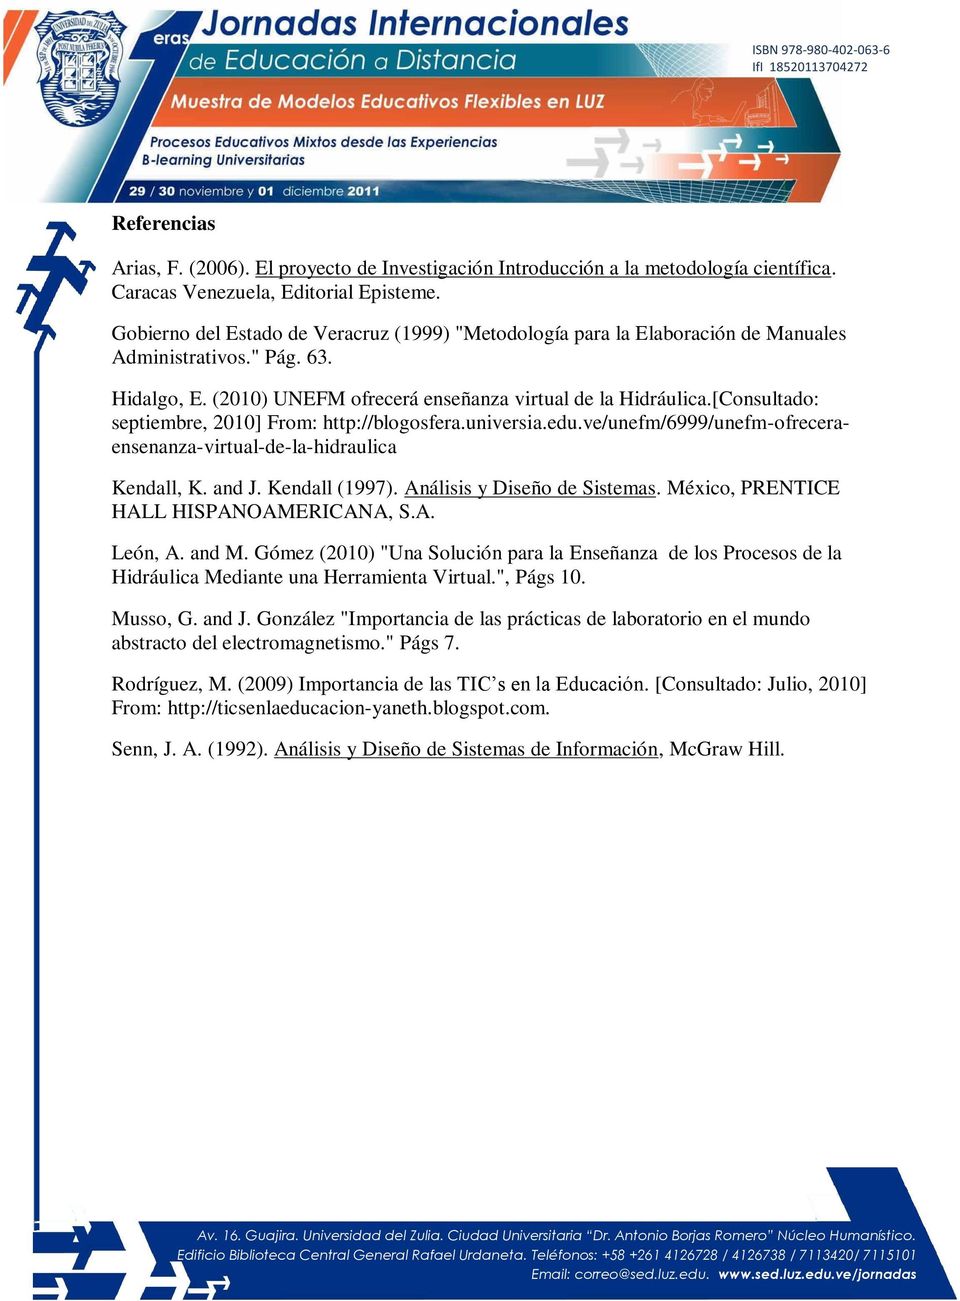 [Consultado: septiembre, 2010] From: http://blogosfera.universia.edu.ve/unefm/6999/unefm-ofreceraensenanza-virtual-de-la-hidraulica Kendall, K. and J. Kendall (1997). Análisis y Diseño de Sistemas.